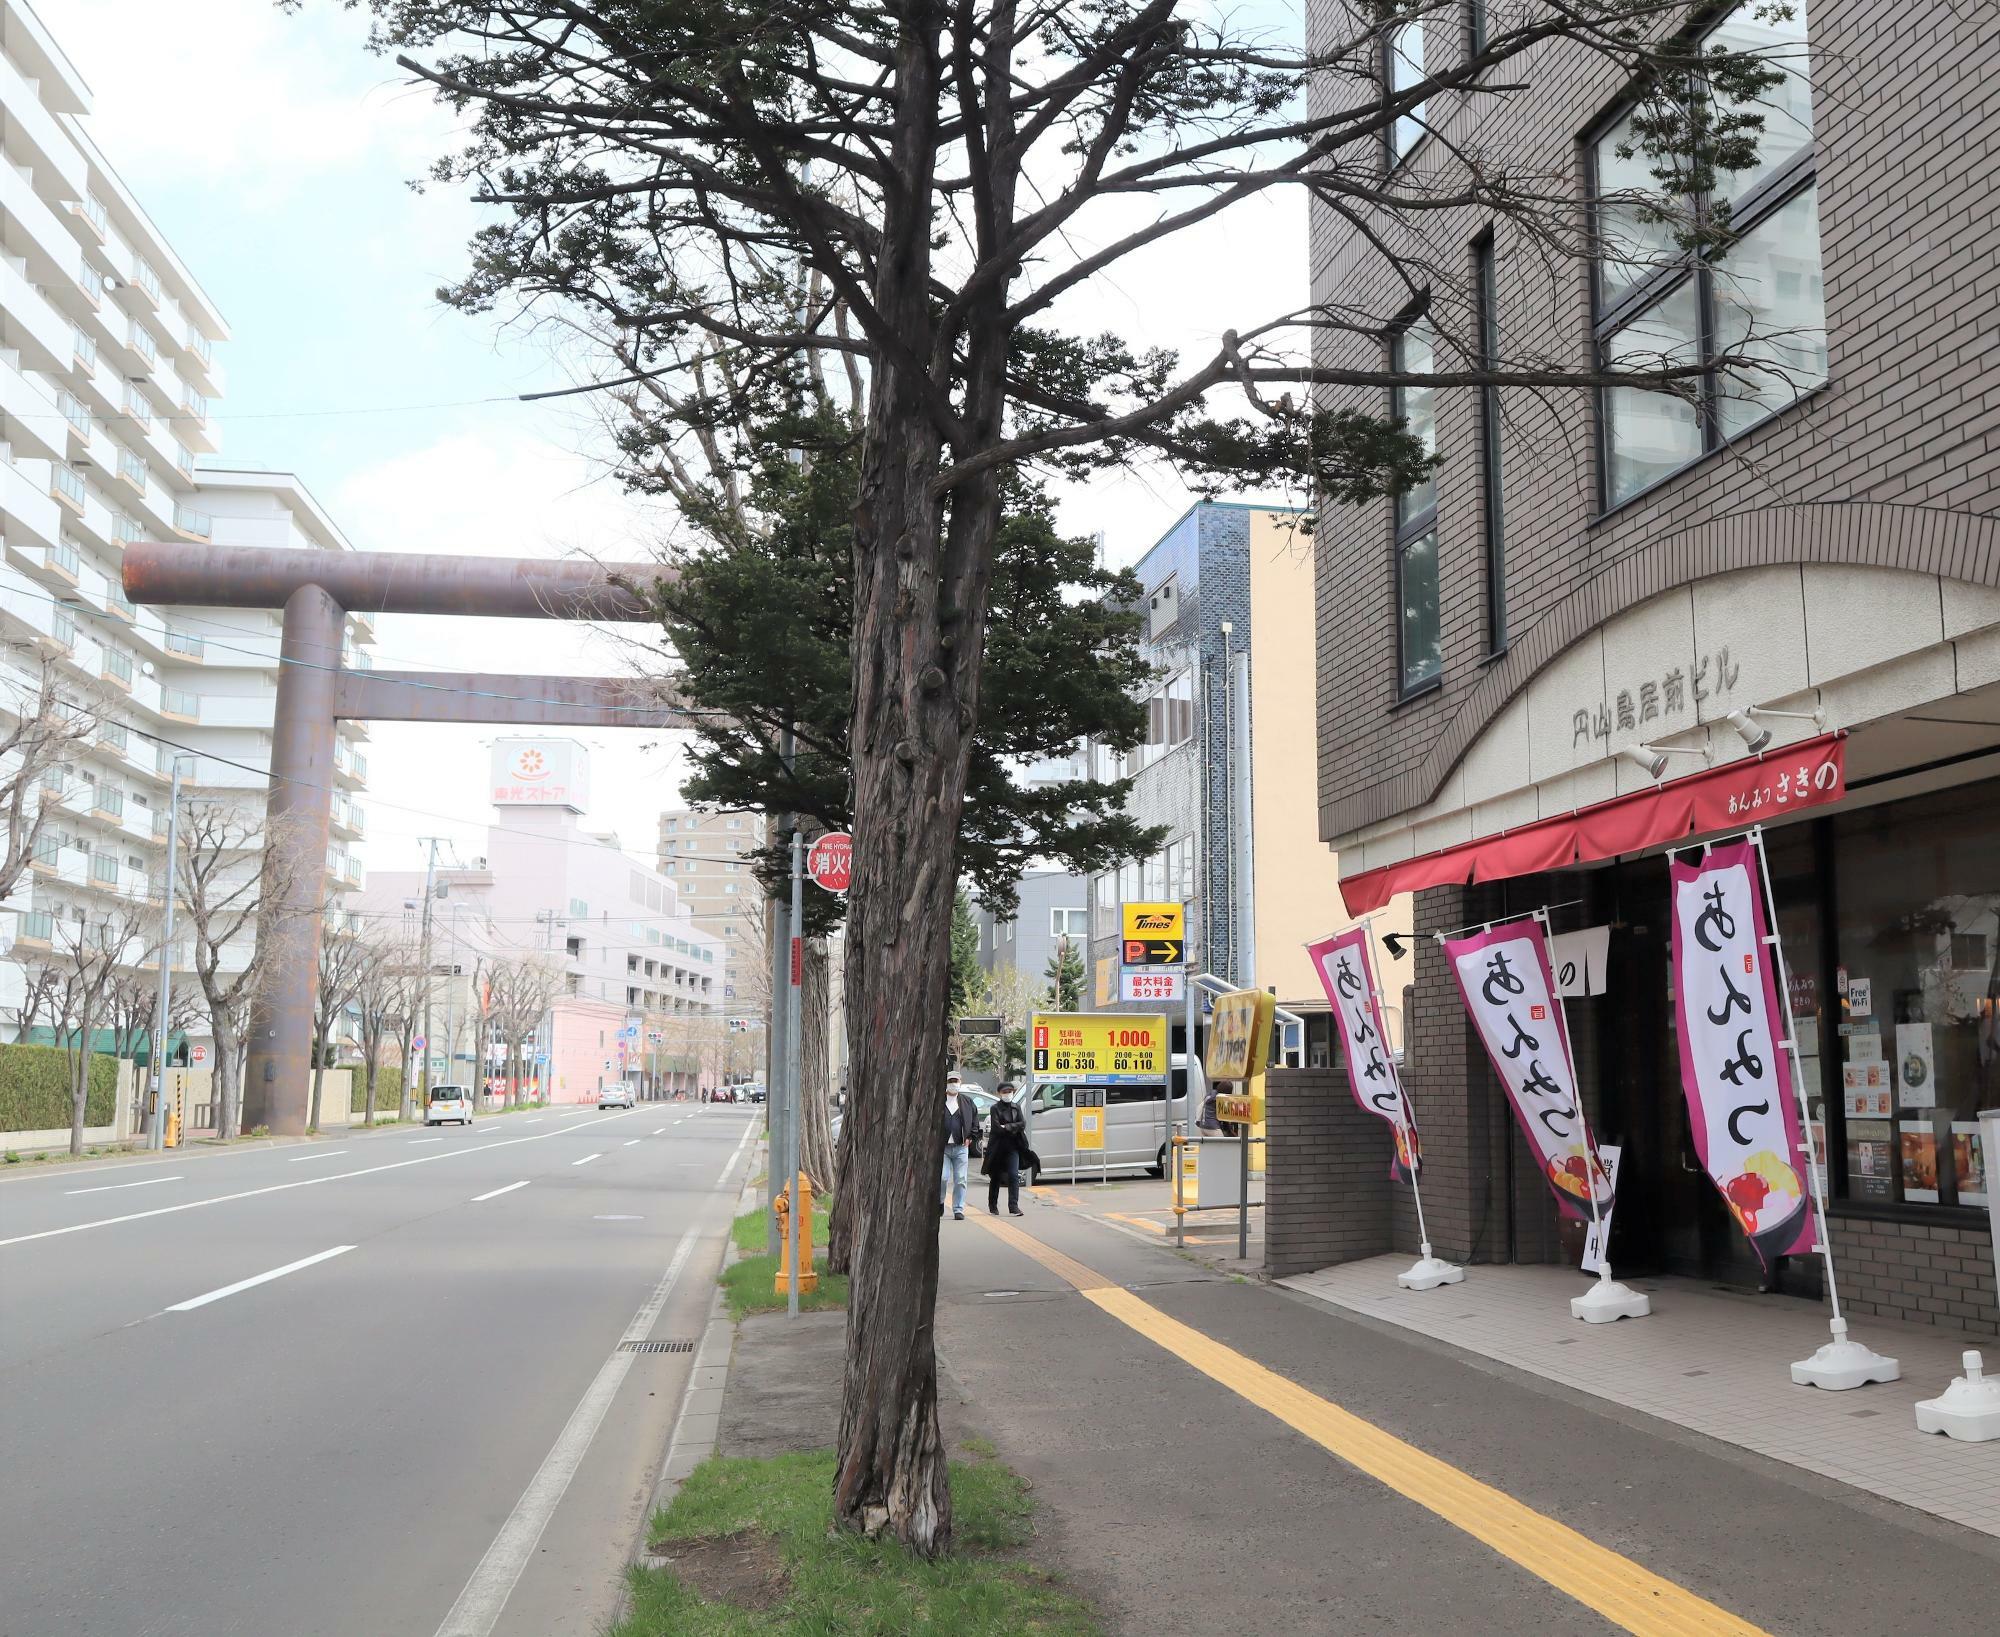 奥に見える鳥居が「北海道神宮 第1鳥居」です。鳥居から北海道神宮に向かうと店舗は左側にあります。